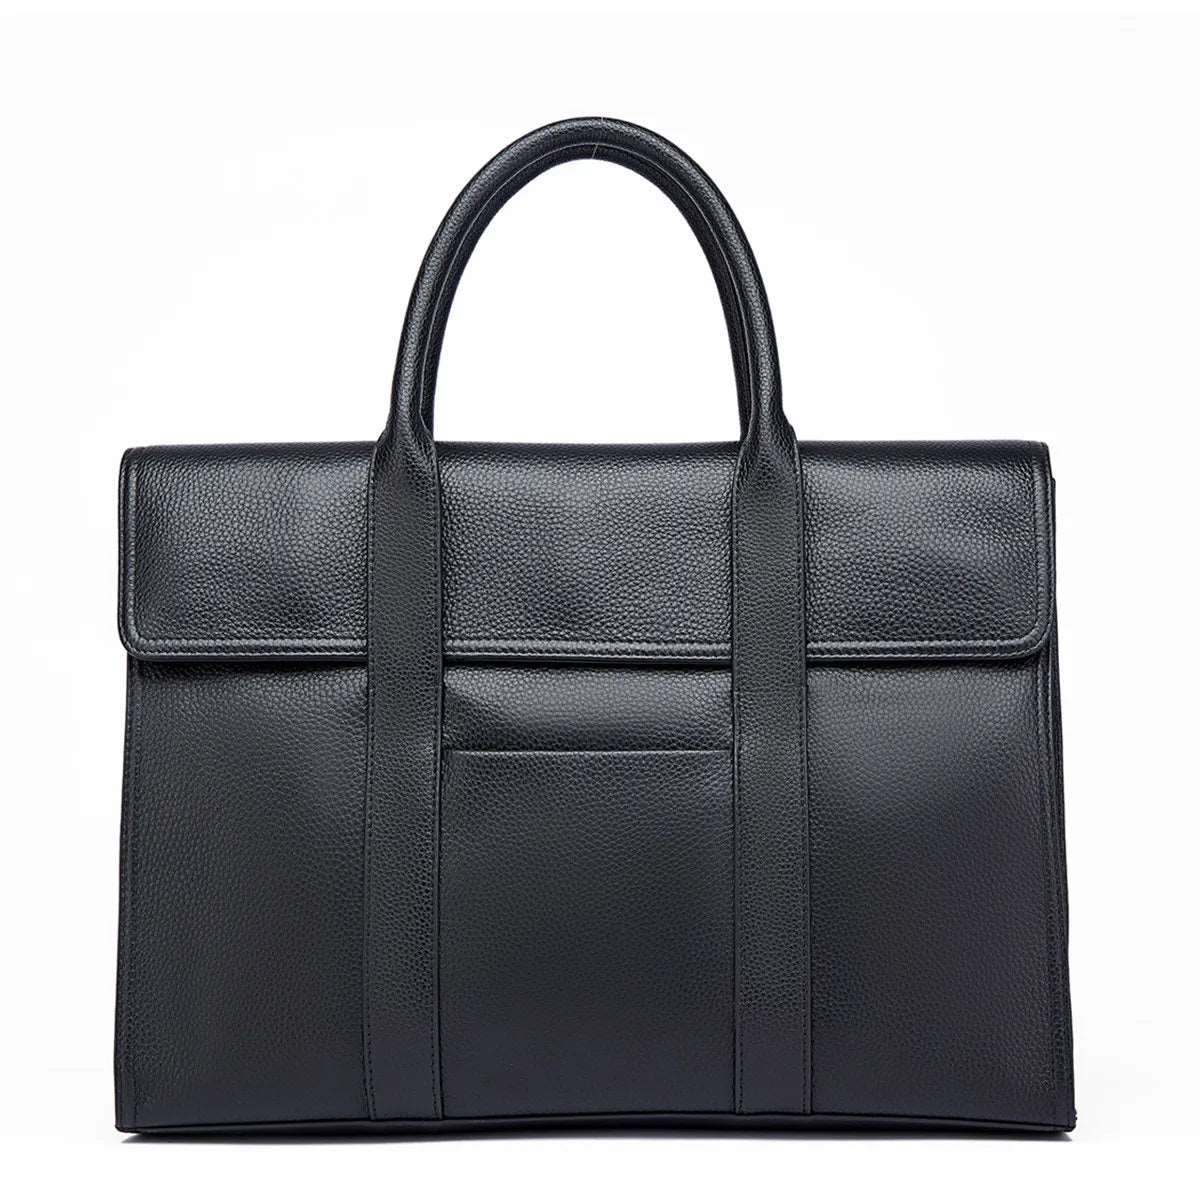 BISON DENIM Genuine Leather Business 14 inch Laptop Messenger Bag